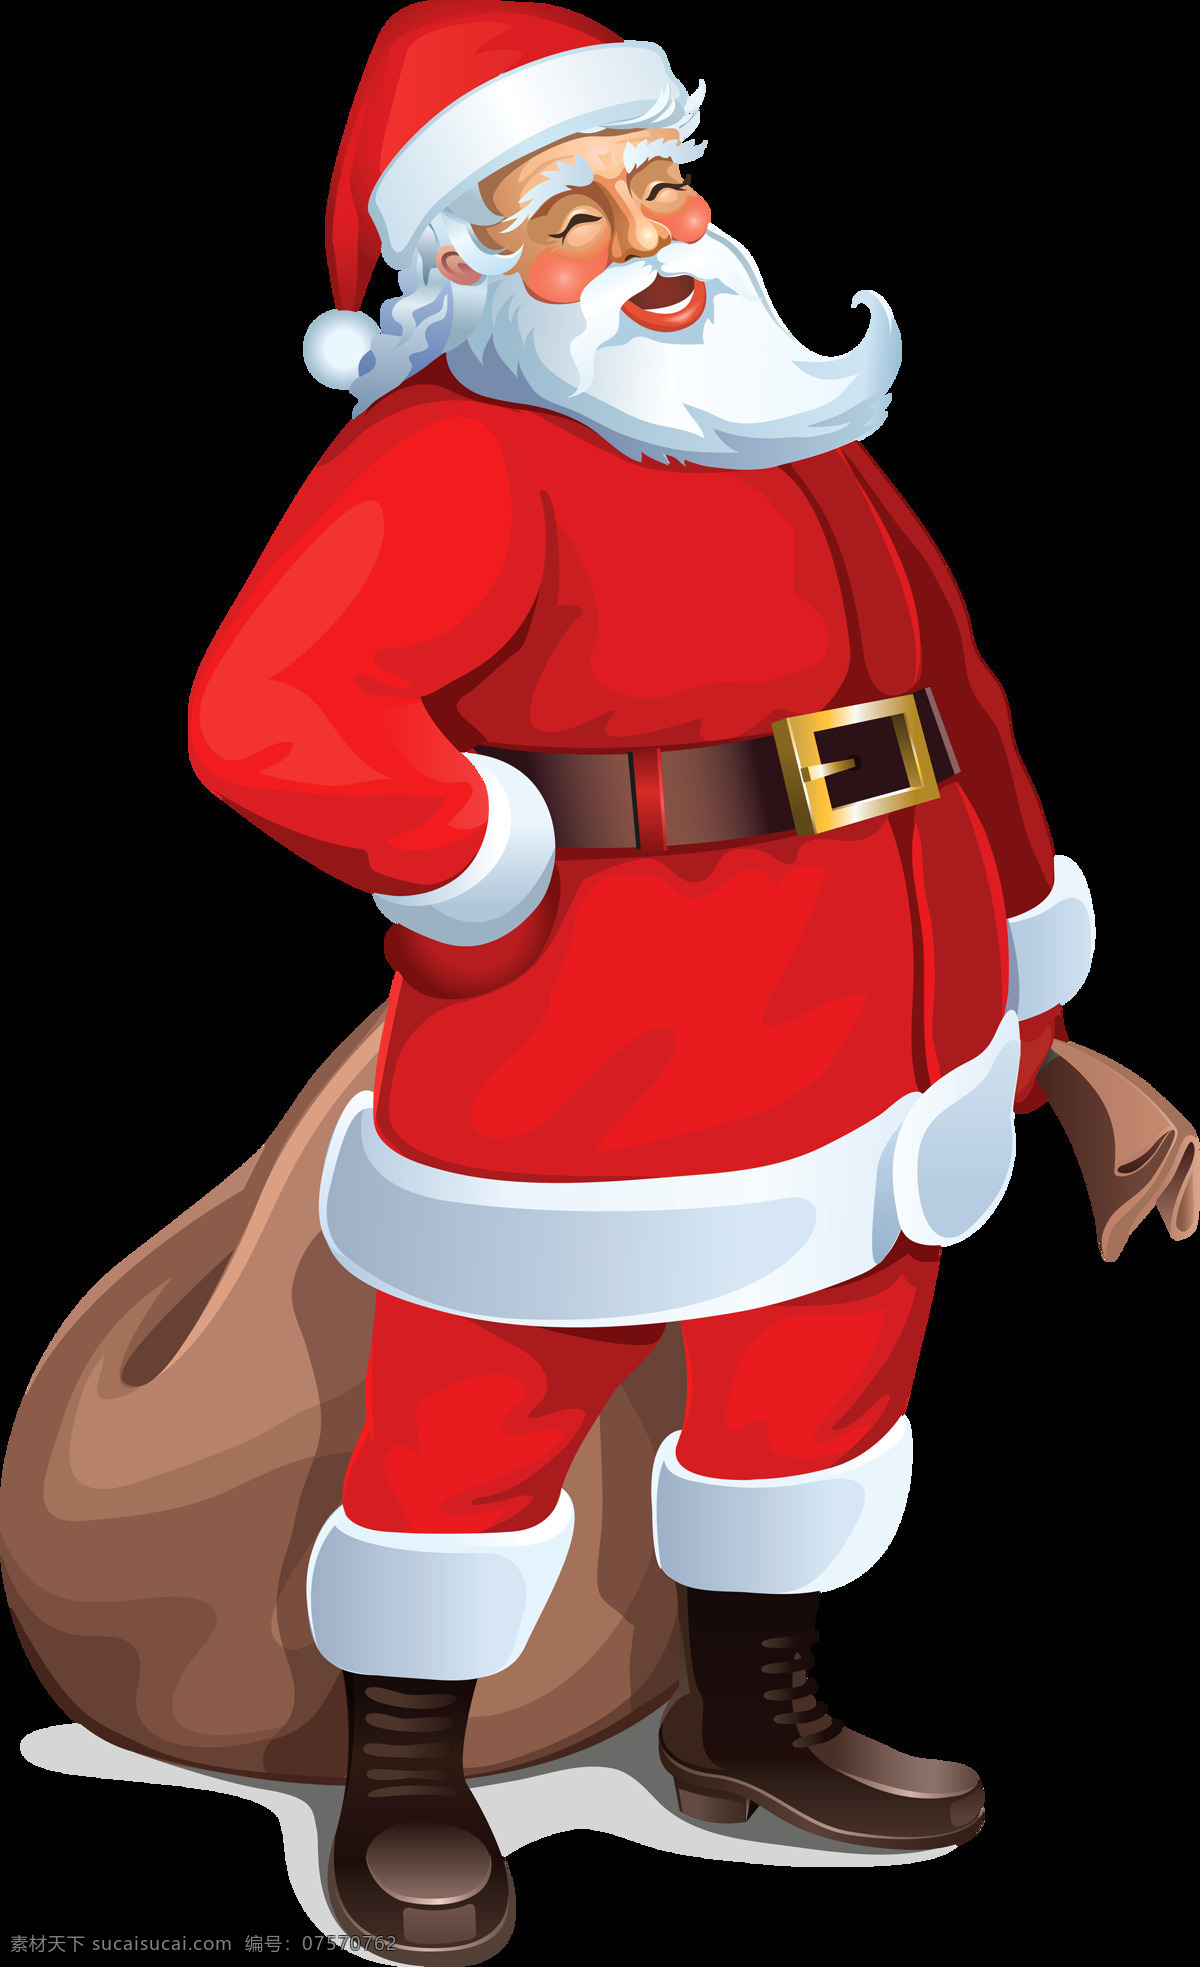 圣诞老人 袋子 免 抠 透明 图 层 卡通 骑 麋鹿 驯鹿 圣诞老人真人 简 笔画 彩色 女圣诞老人 圣诞老人鹿